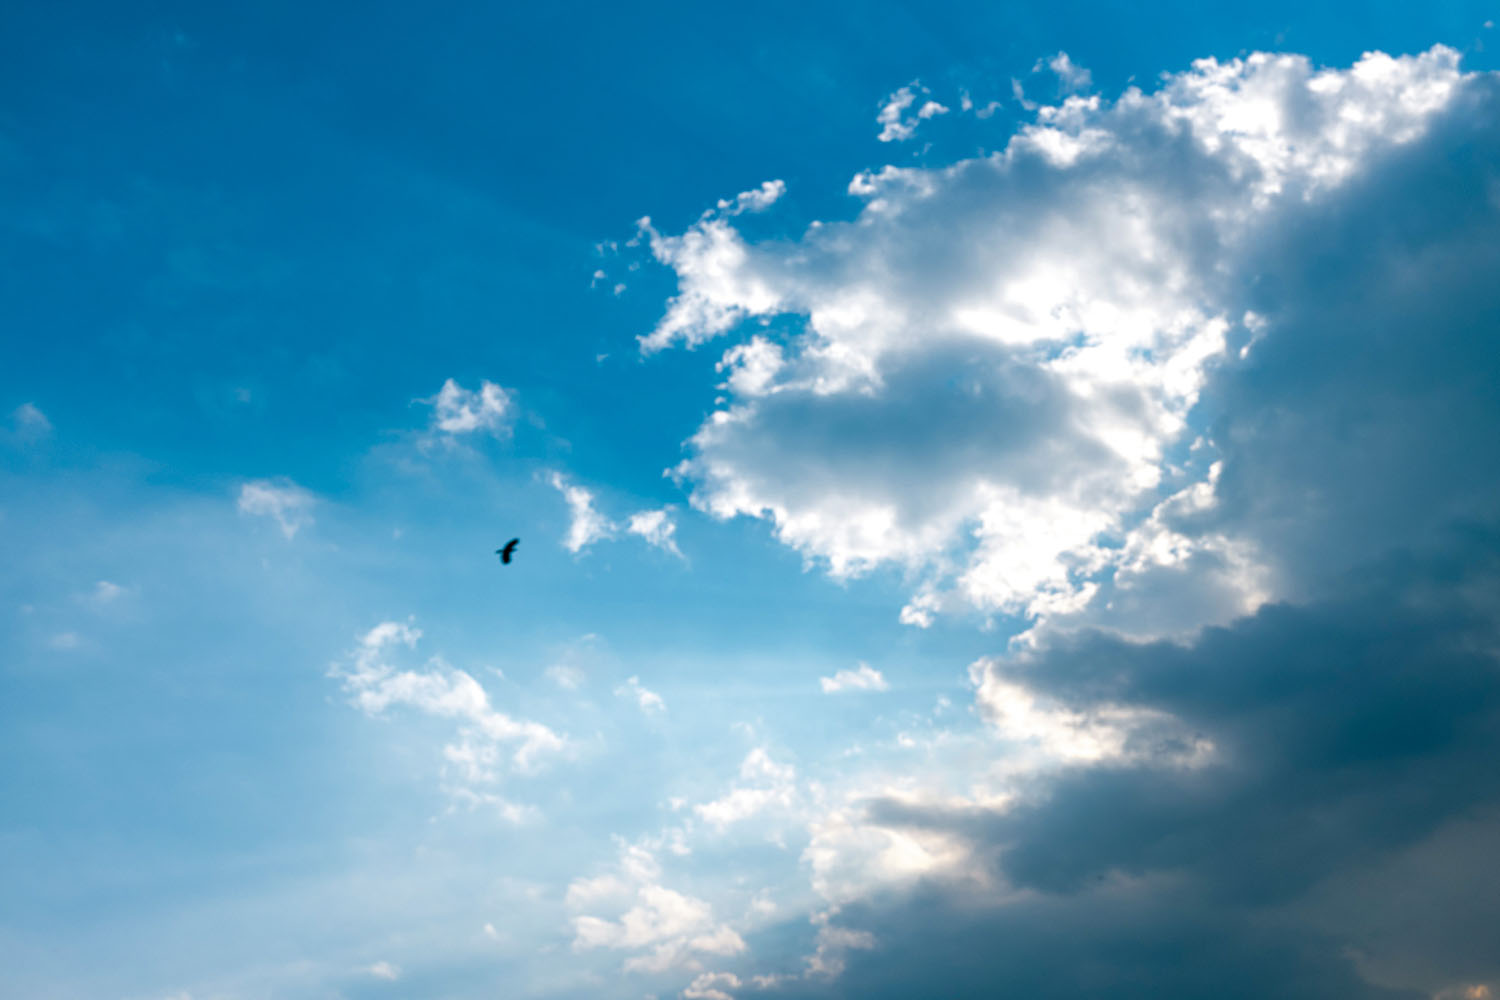 絵になりやすくありふれた 雲 の写真 最高の一枚を撮るコツは いつでも撮れるようにしておくこと 大村祐里子の身近なものの撮り方辞典 第26回 Pictures